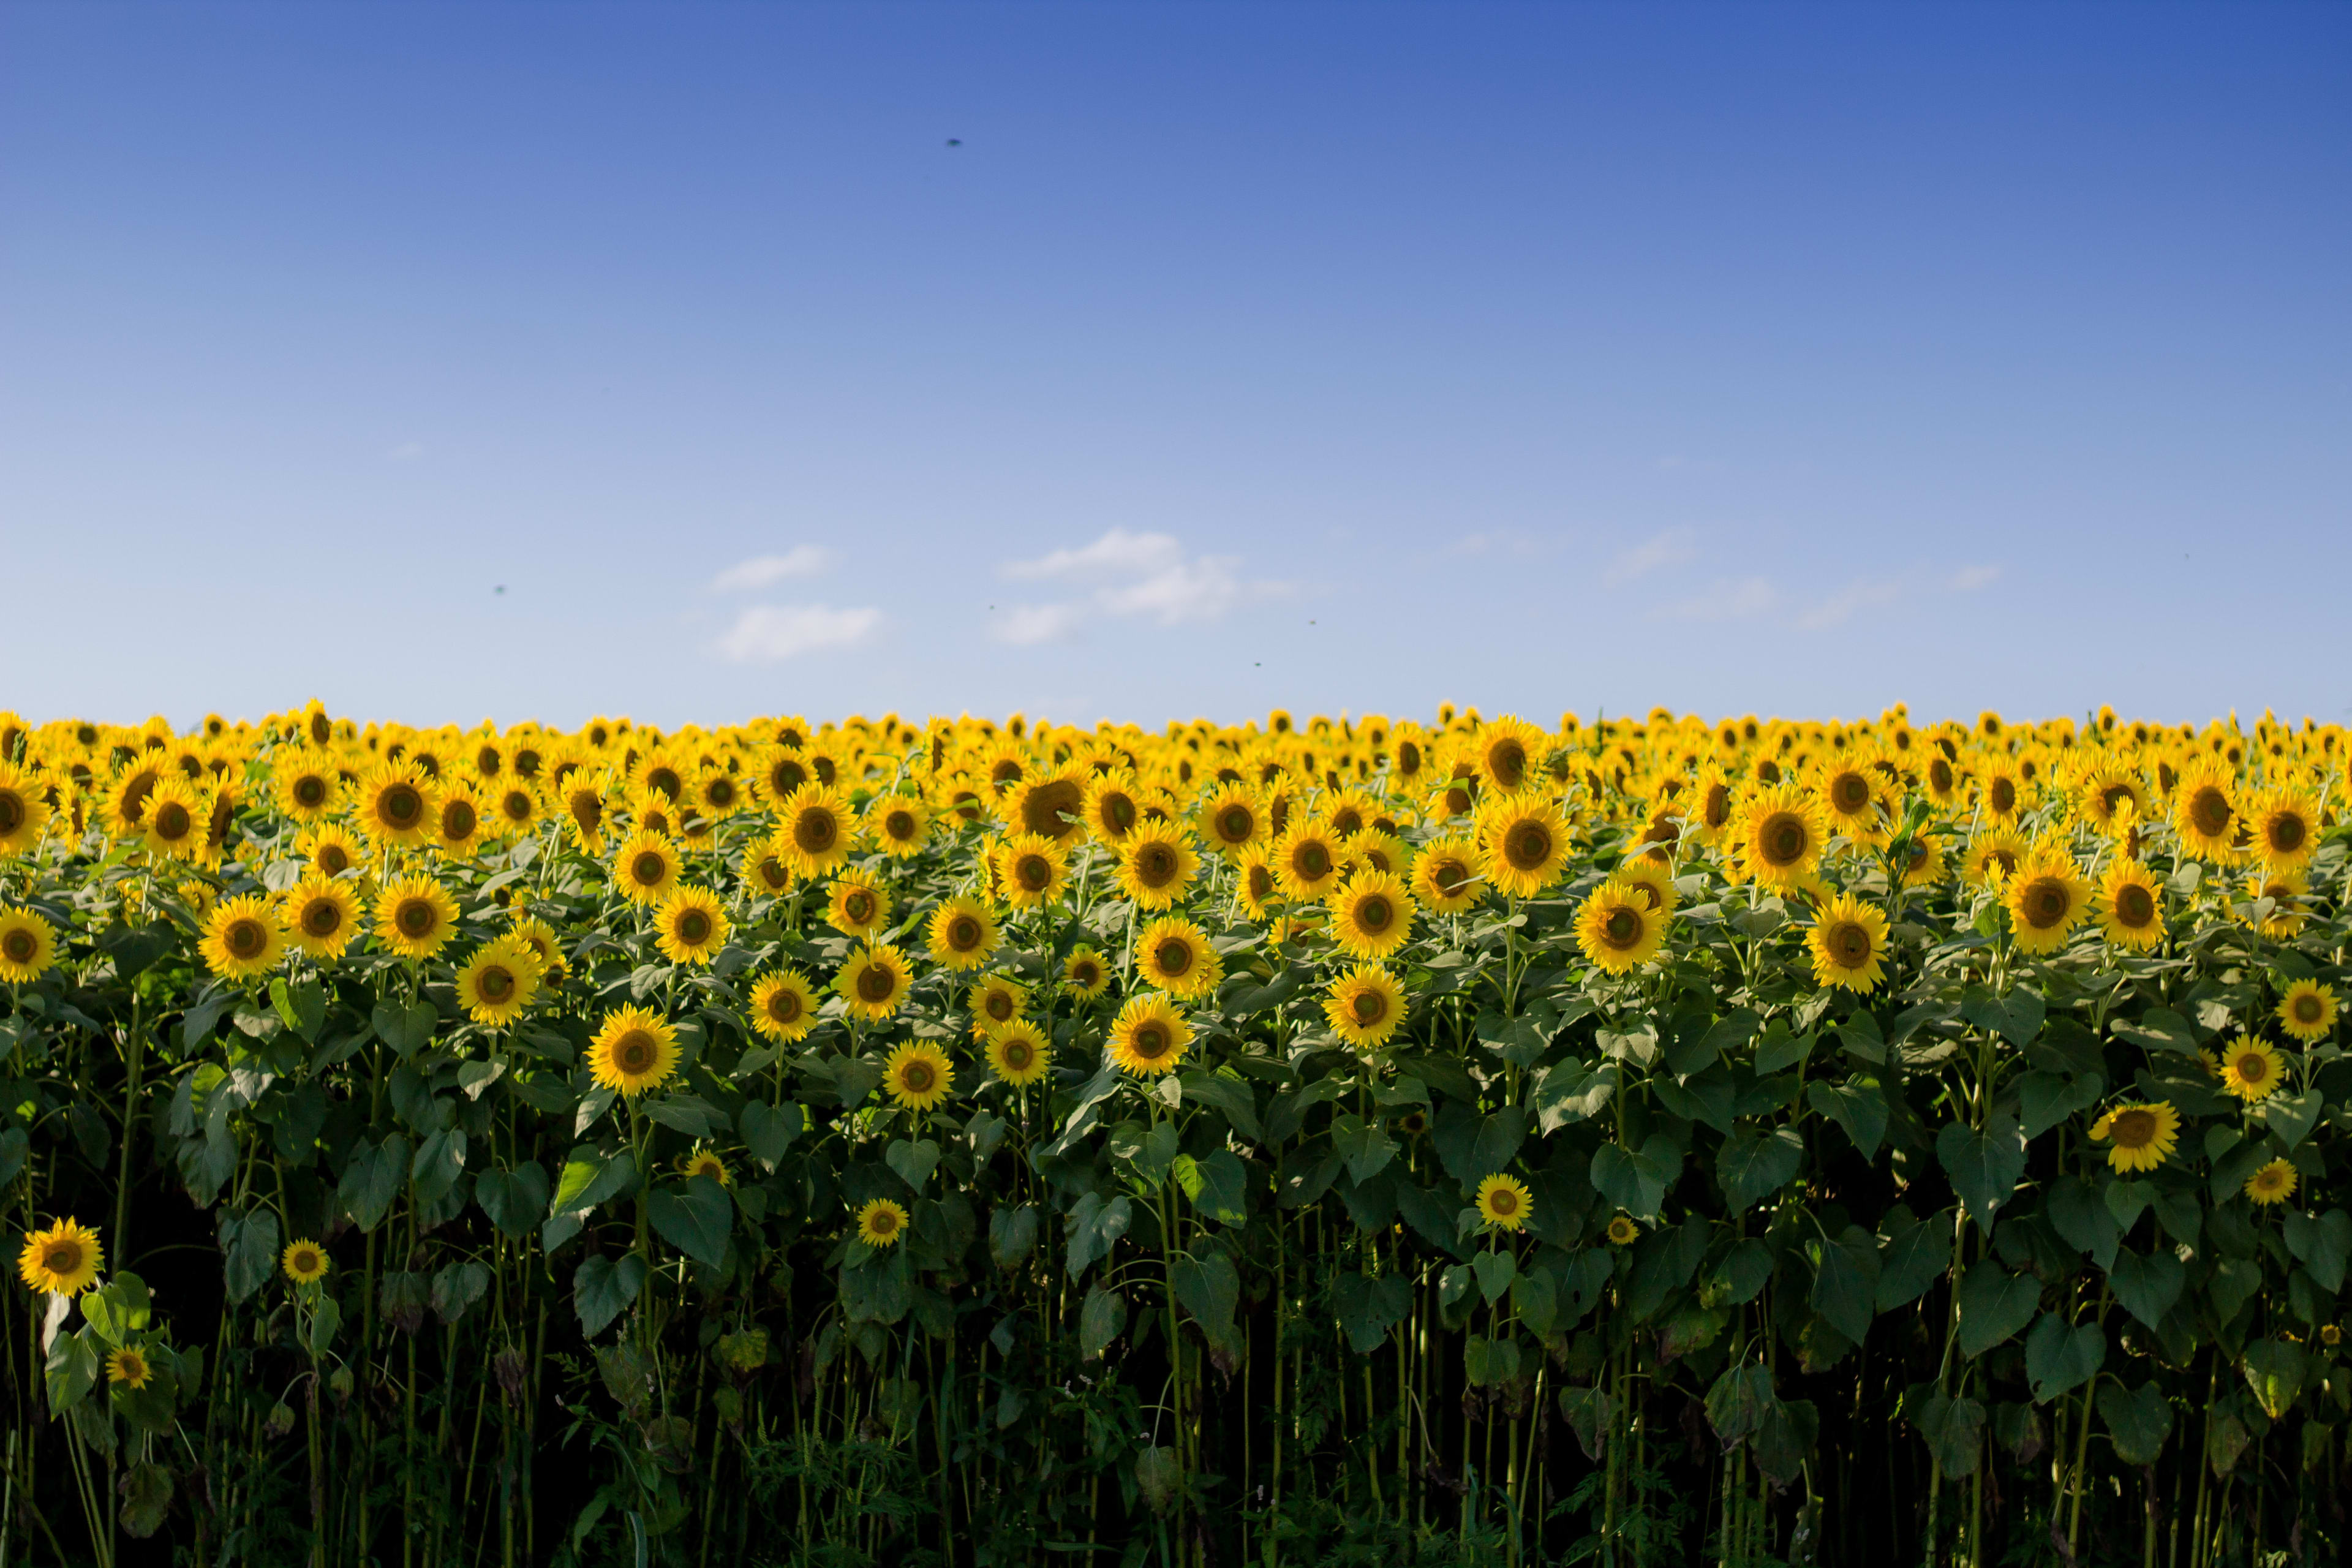 Groningse boer geeft gratis zonnebloemen weg 'om de mensen een gelukkig gevoel te geven'